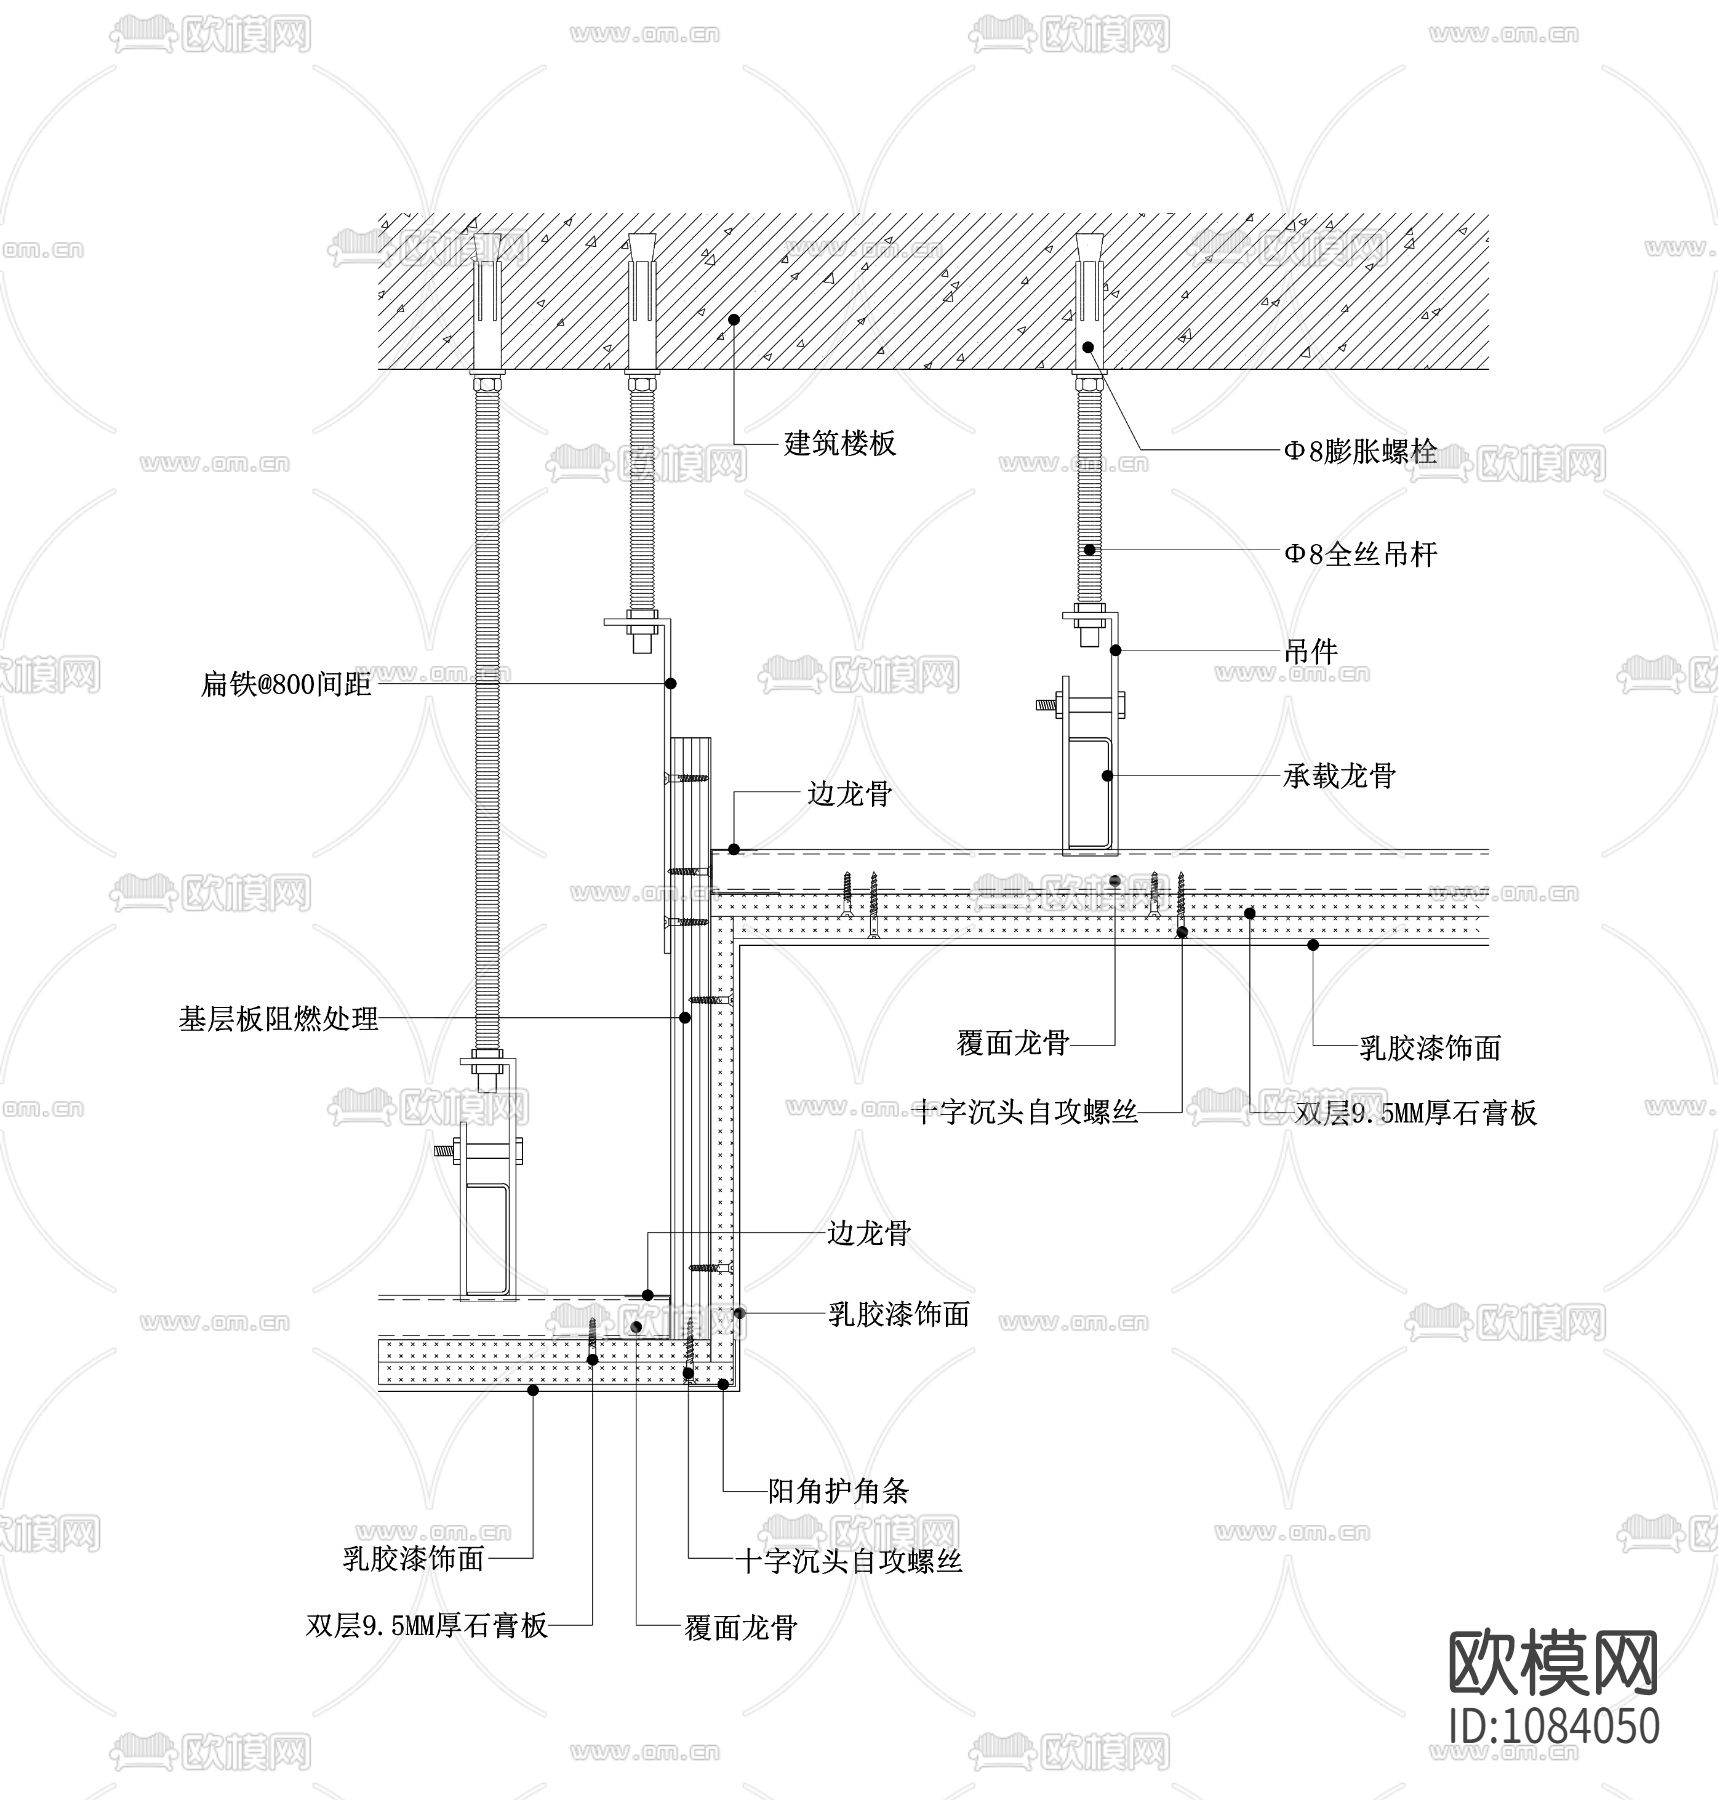 石膏板吊顶节点图(高低差造型)